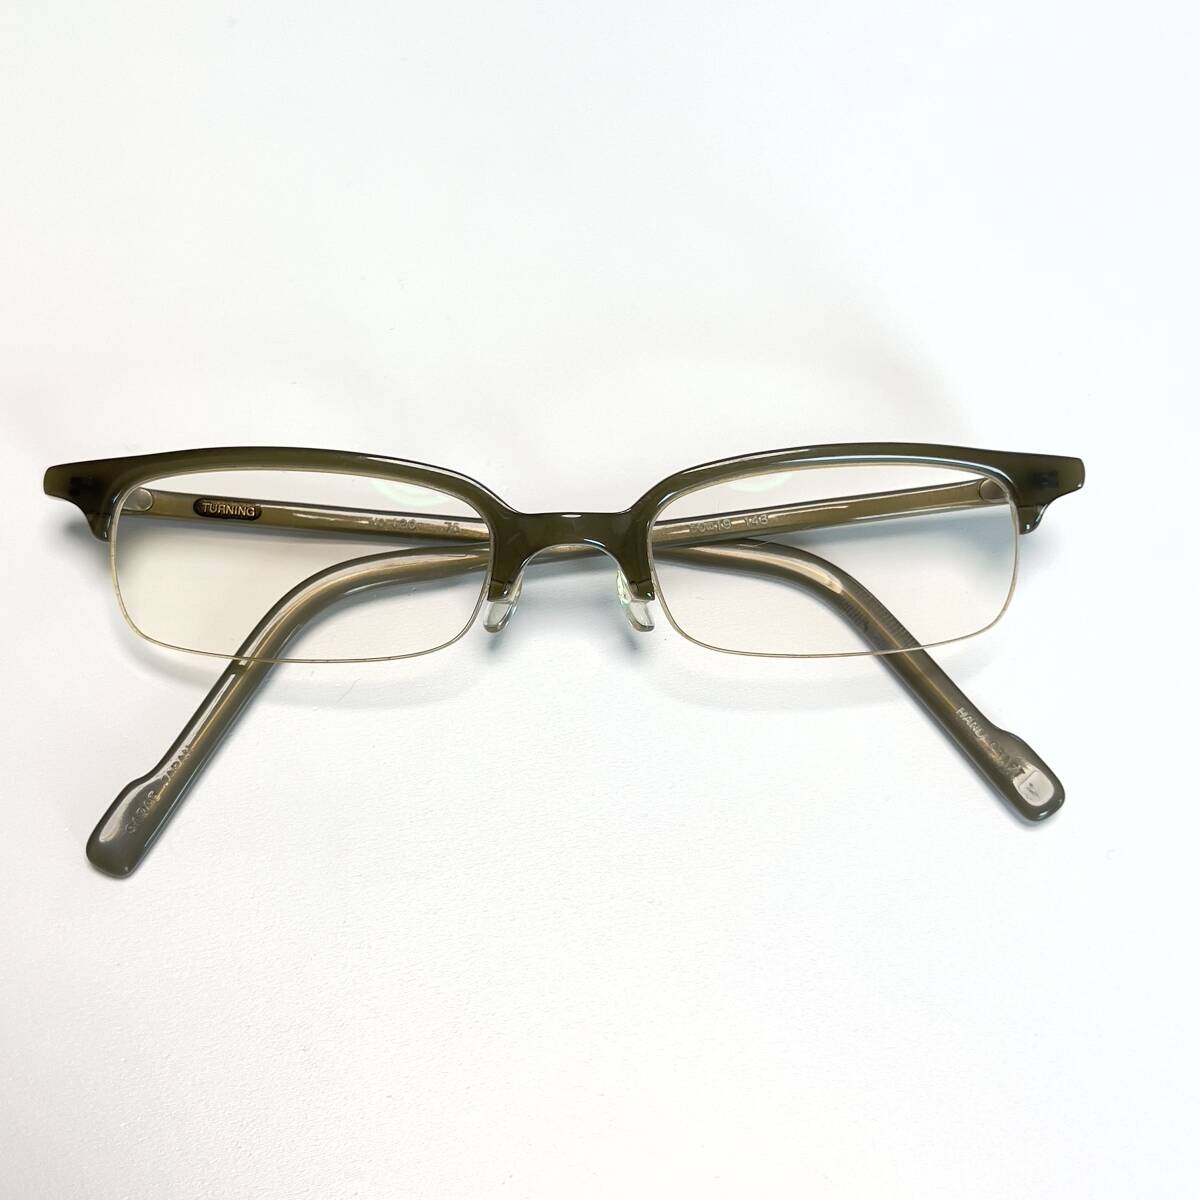 ◆TURNING ...  солнцезащитные очки  ... рот  очки    очки  50□19 143  степень входит  оптика    мужской   женский   половина  обод  ... ... очки    квадрат  